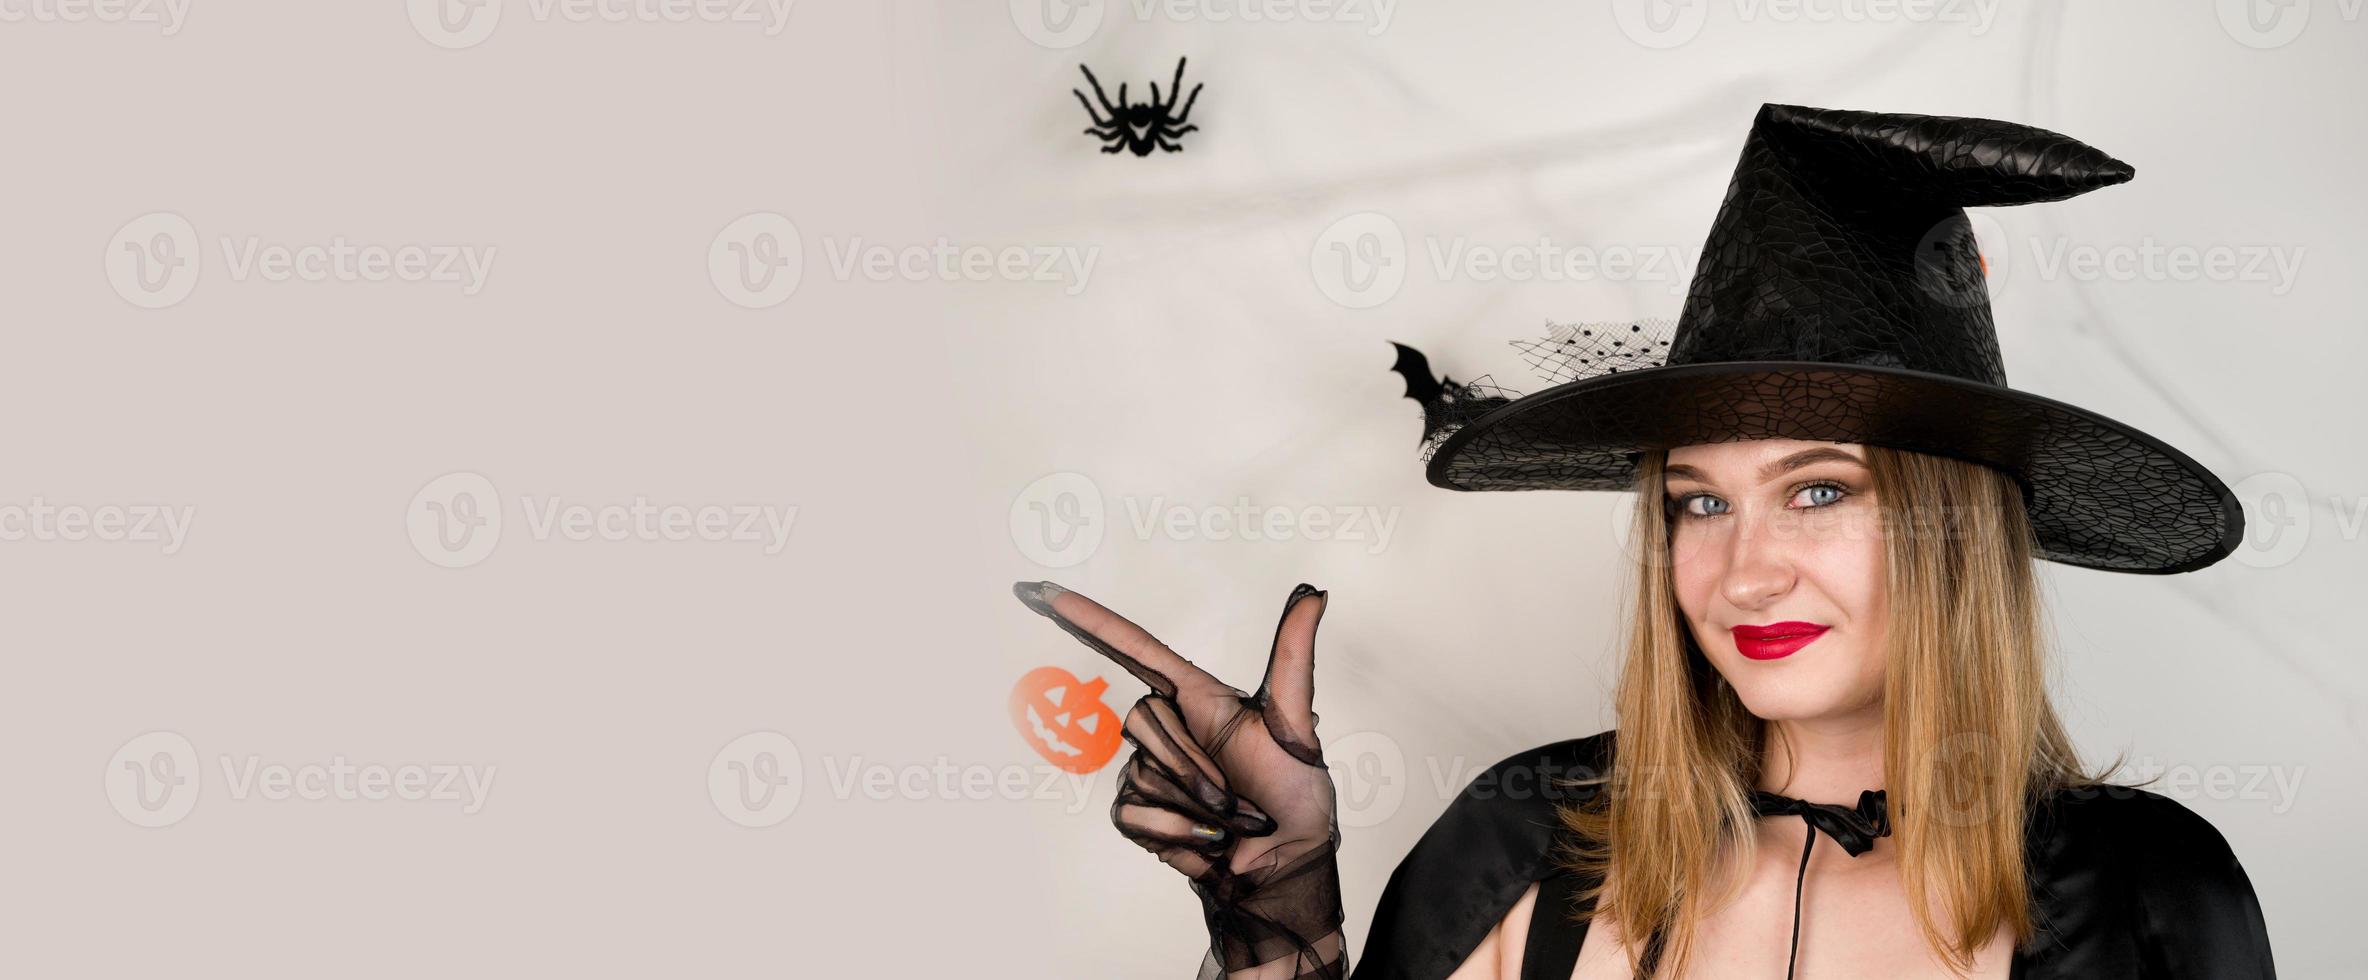 bannière de fond d'halloween avec une belle blonde dans un costume de sorcière pointant vers l'espace empy.invitation à la fête. photo